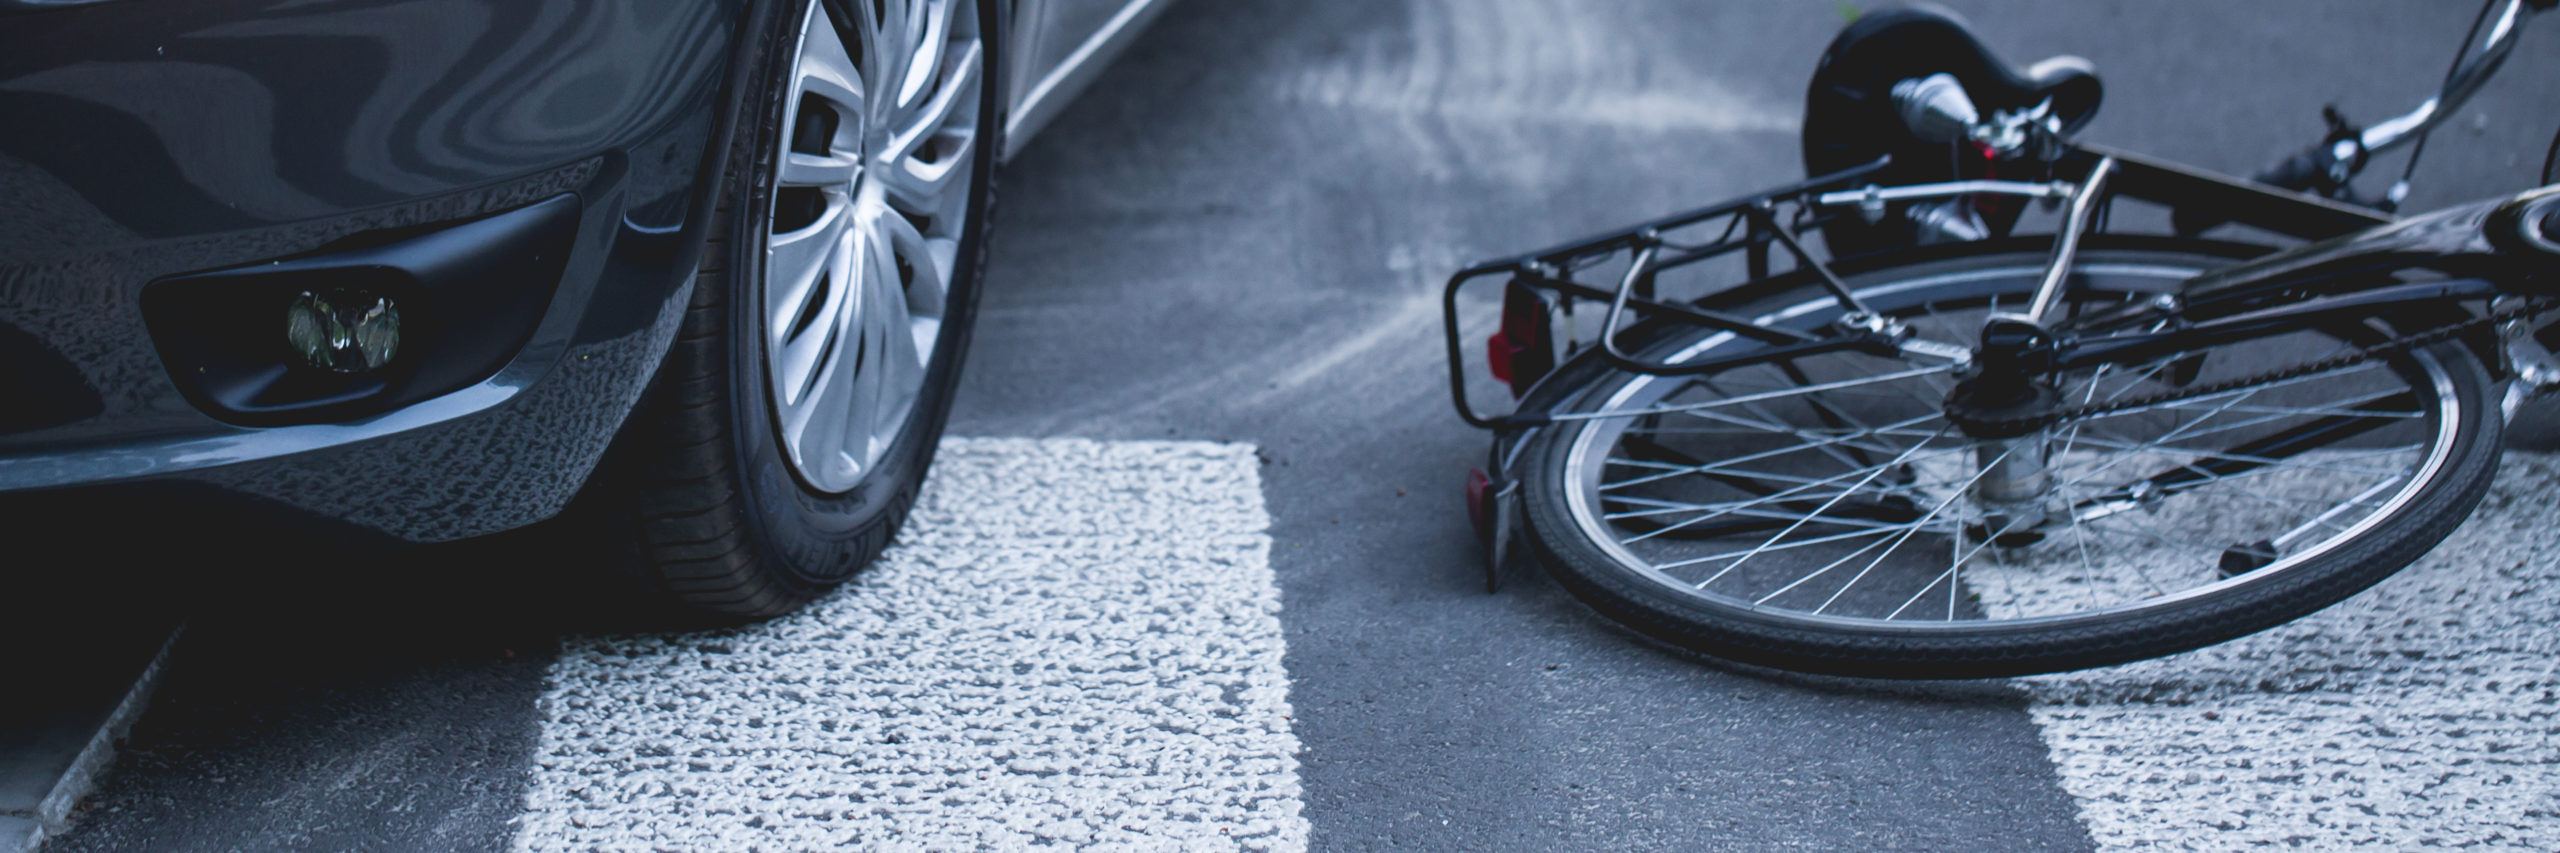 ein Fahrrad liegt nach einem Unfall mit einem Auto auf der Straße